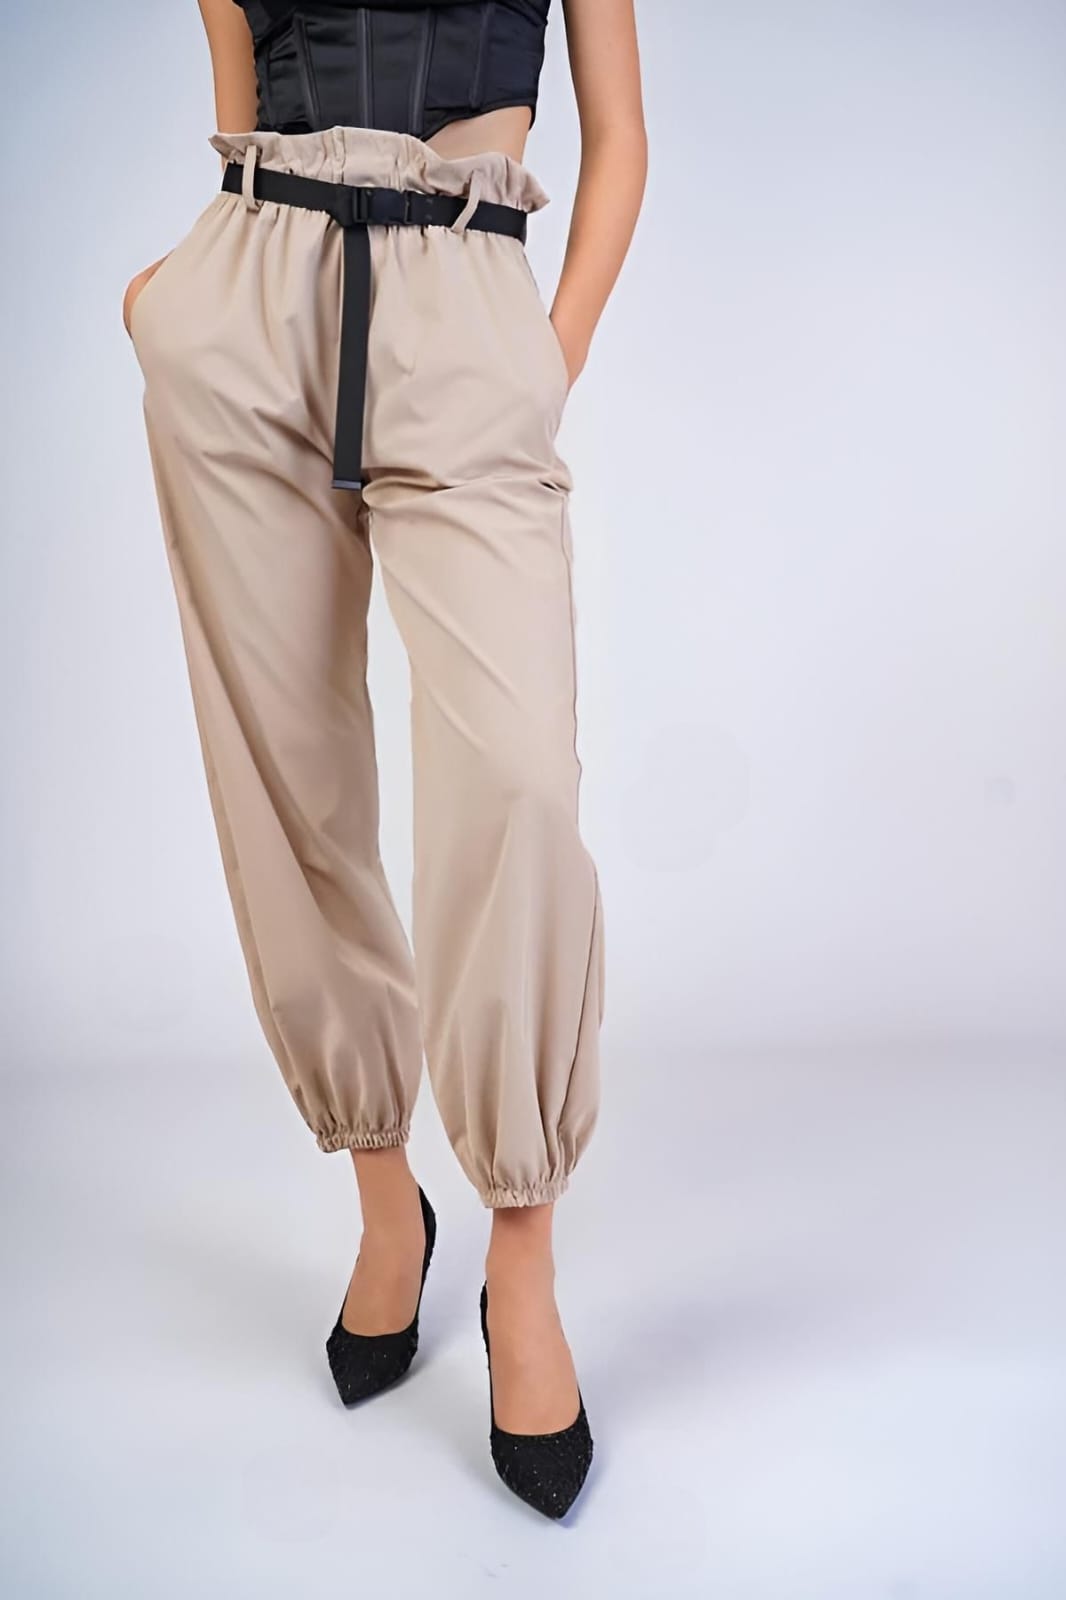 
                  
                    Pantalone Donna Cargo Elastico Tasche Passanti Morbido Cintura - LE STYLE DE PARIS
                  
                